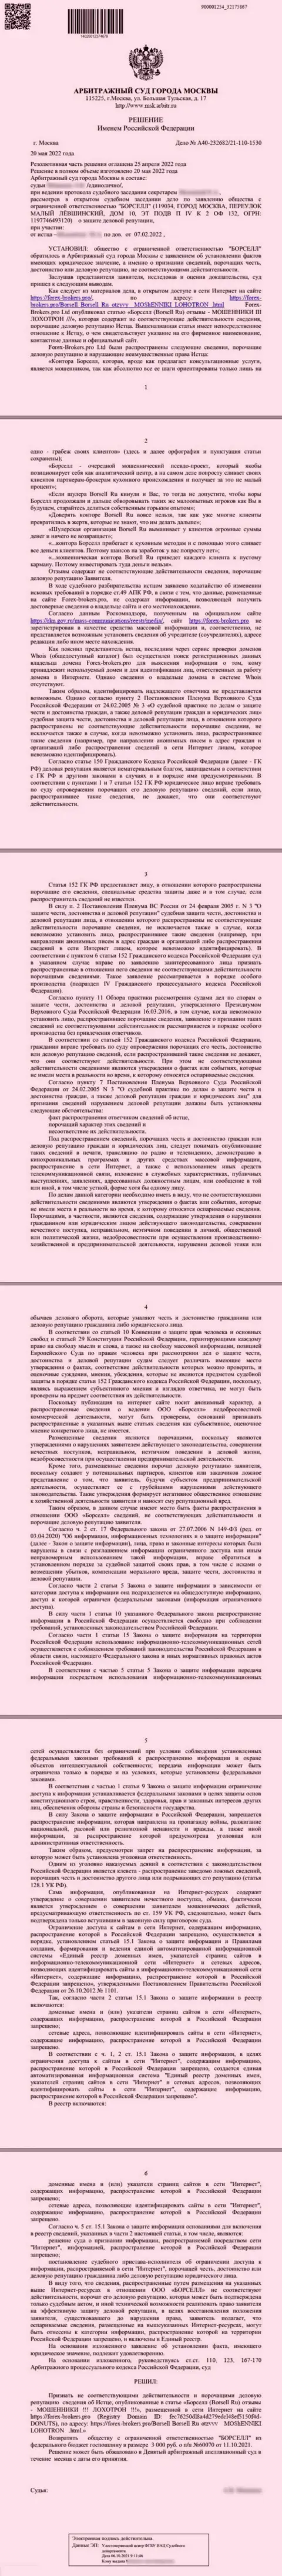 Скрин решения арбитражного суда по иску аналитической компании Borsell Ru